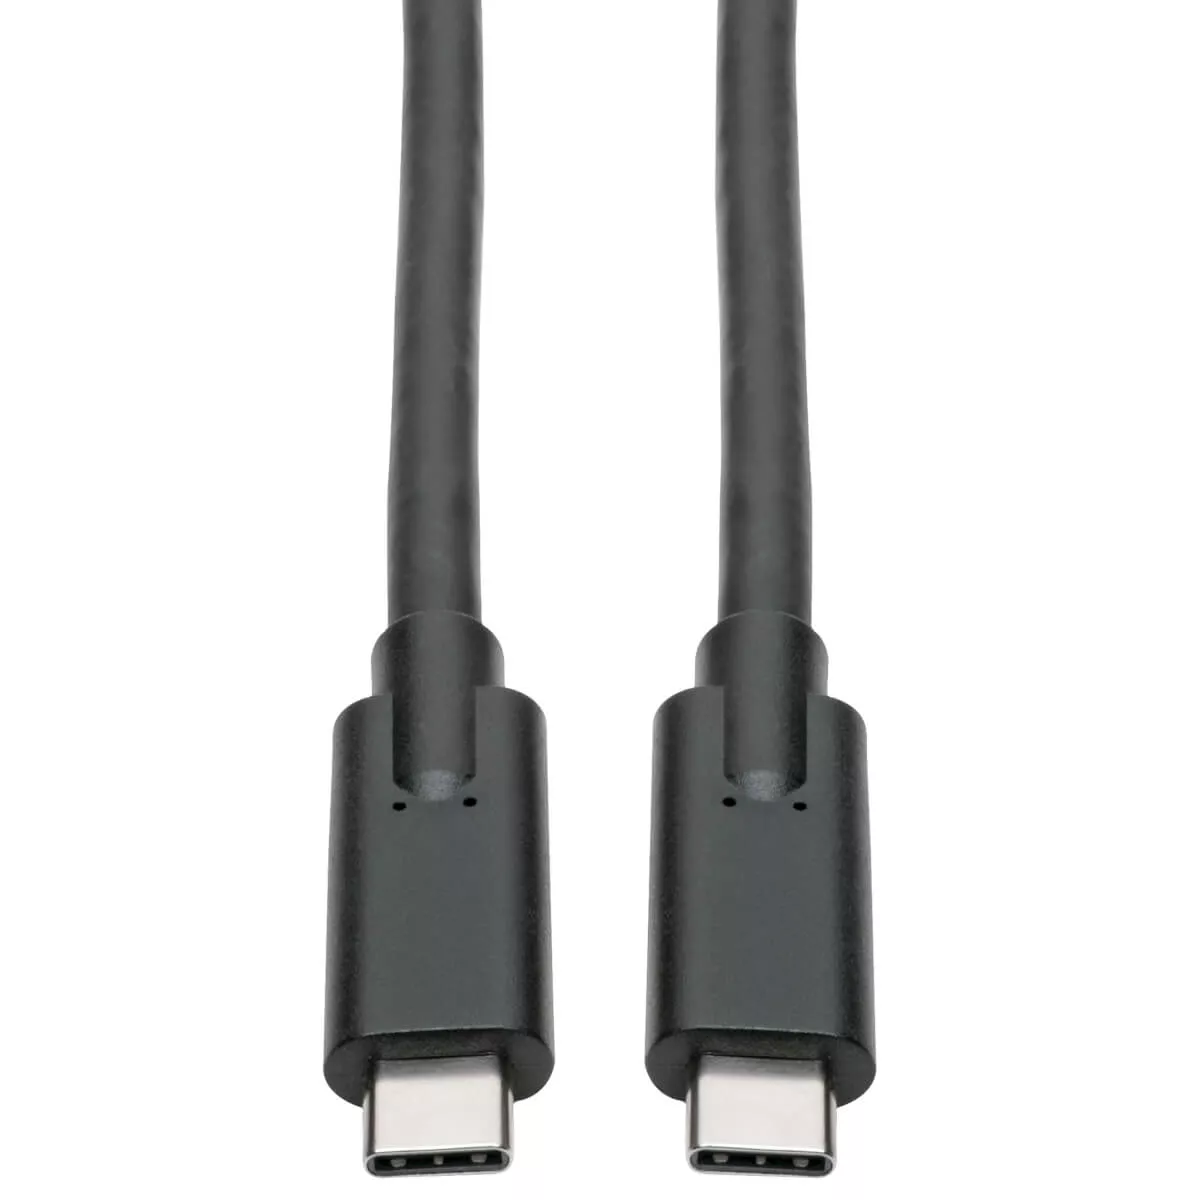 Revendeur officiel EATON TRIPPLITE USB-C Cable M/M - USB 3.1 Gen 1